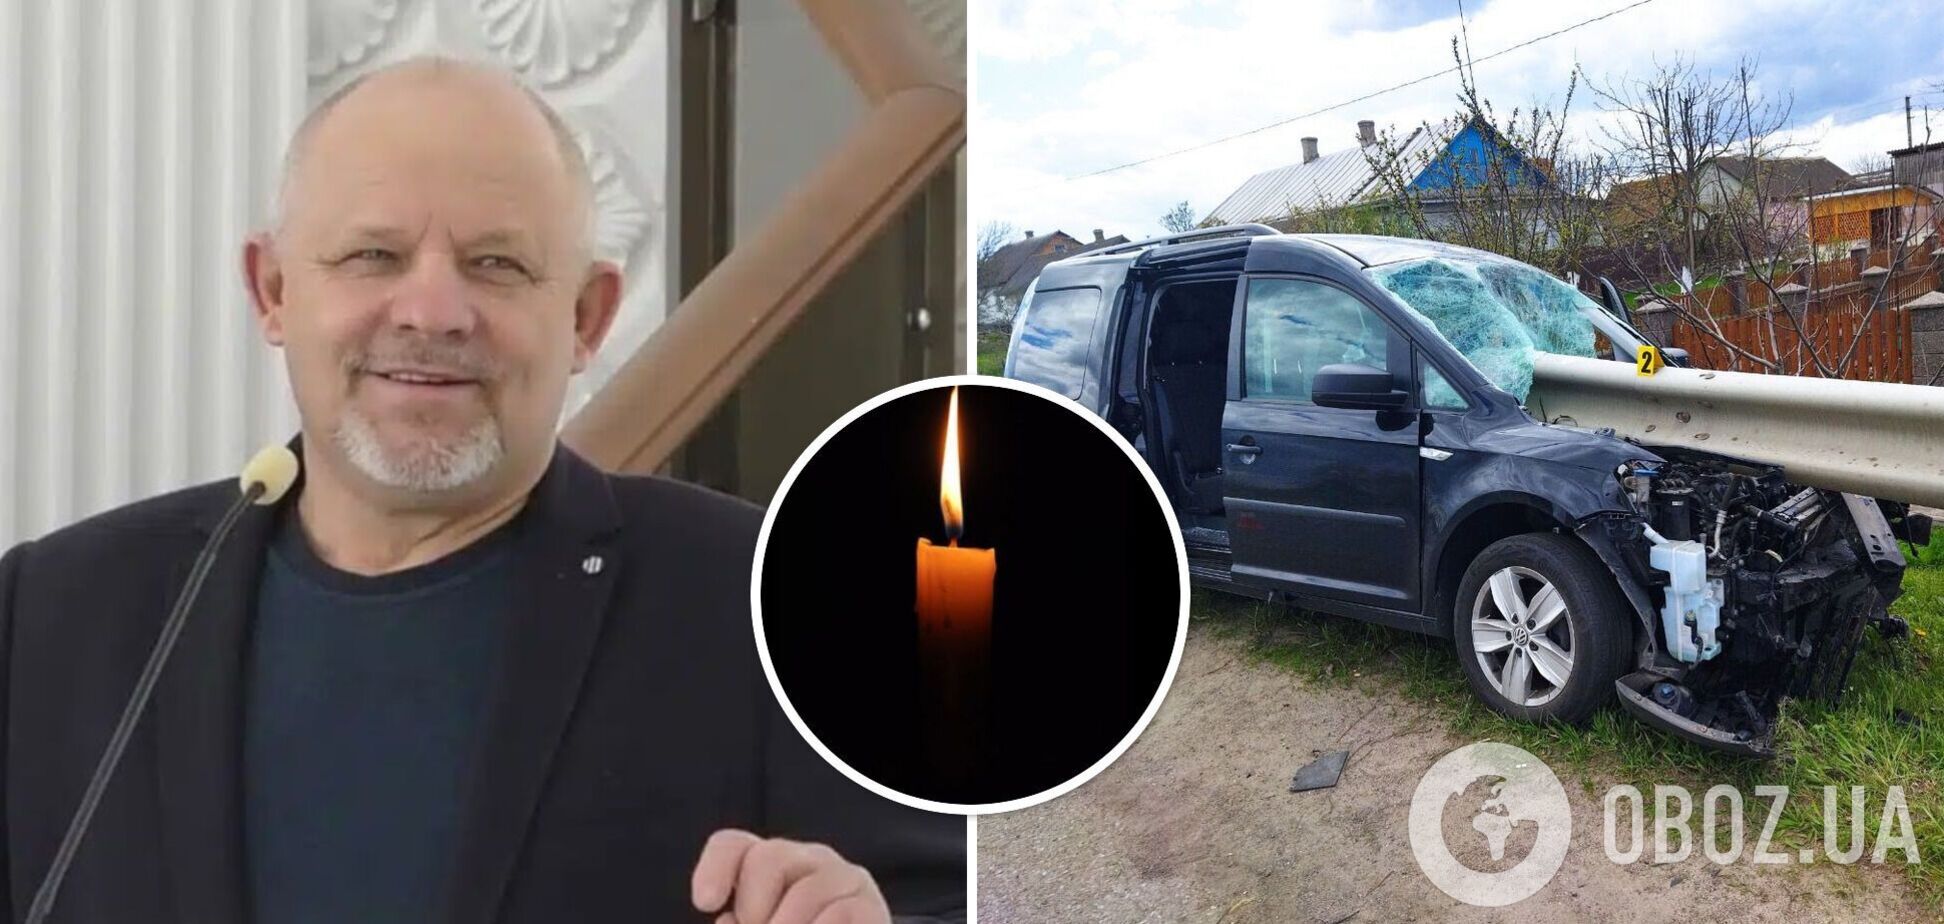 Отбойник пронзил авто: в Ривненской области в ДТП погиб заместитель председателя церкви евангельских христиан-баптистов